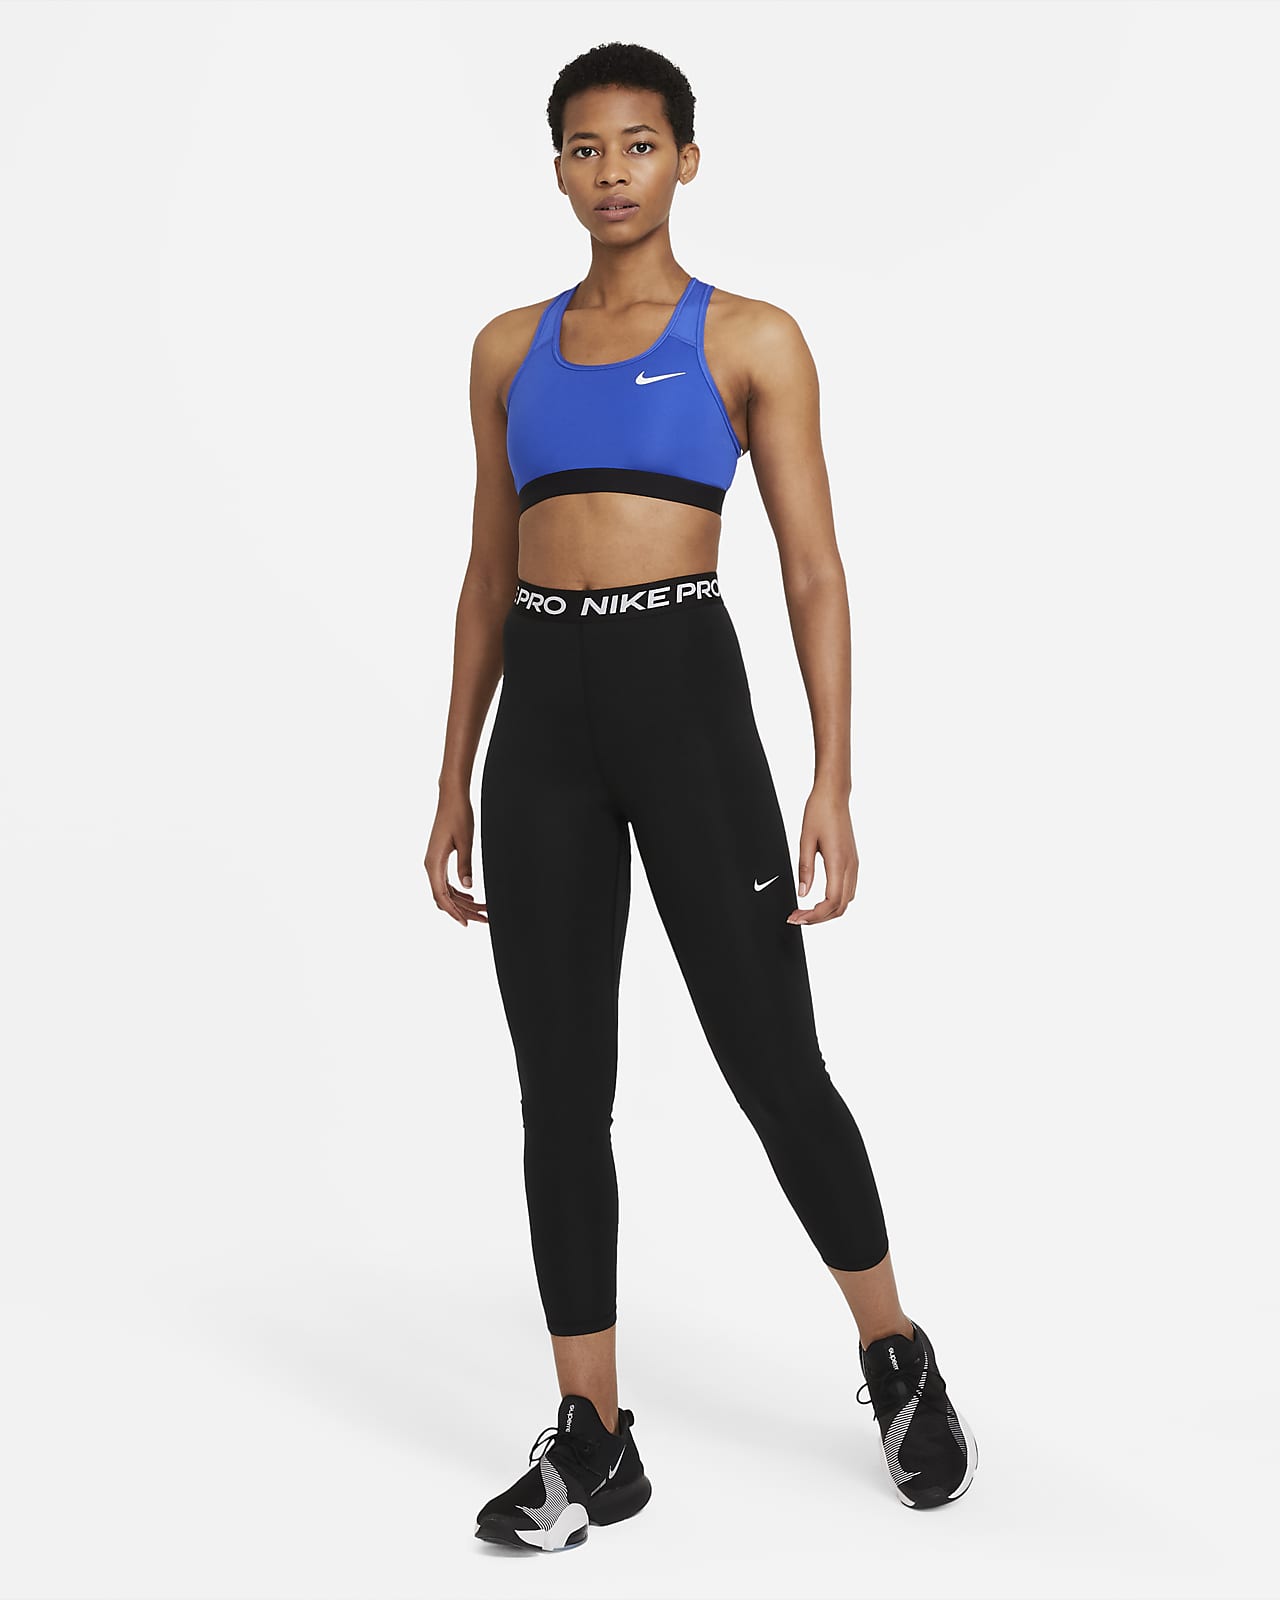 Nike Yoga Women's High-Waisted 7/8 Leggings. Nike LU